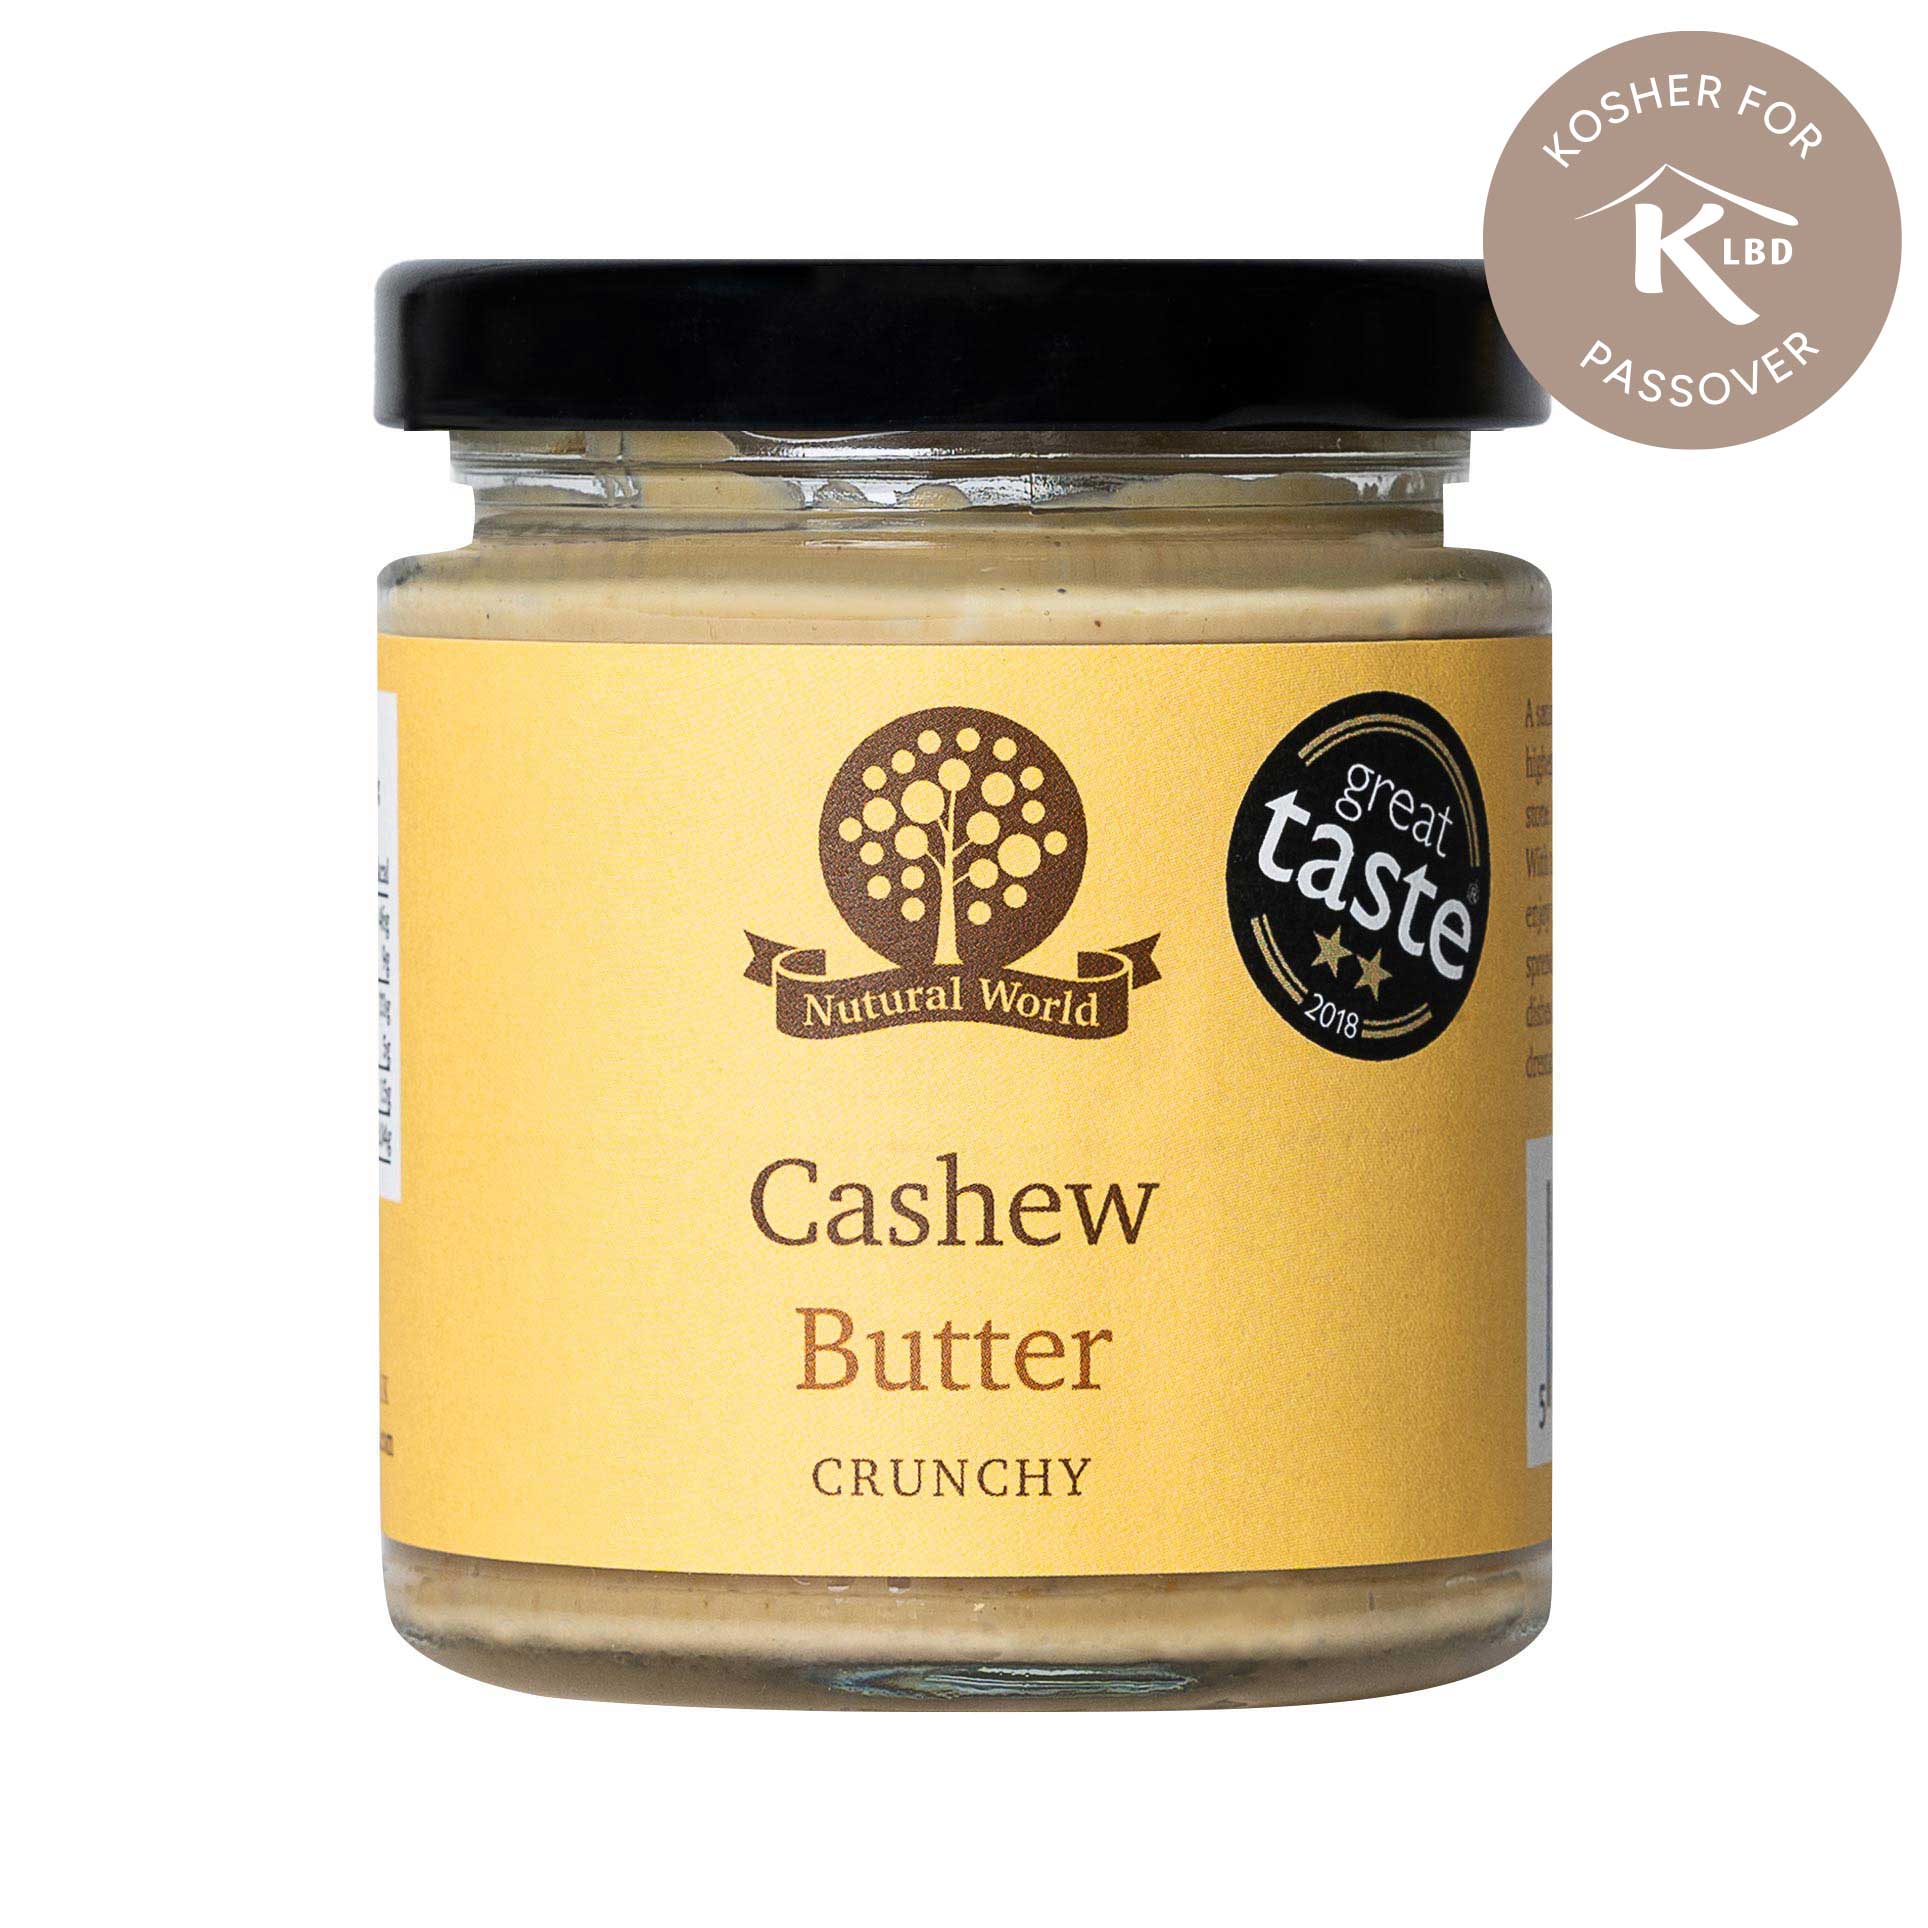 Cashew Nut Butter - Kosher for Passover